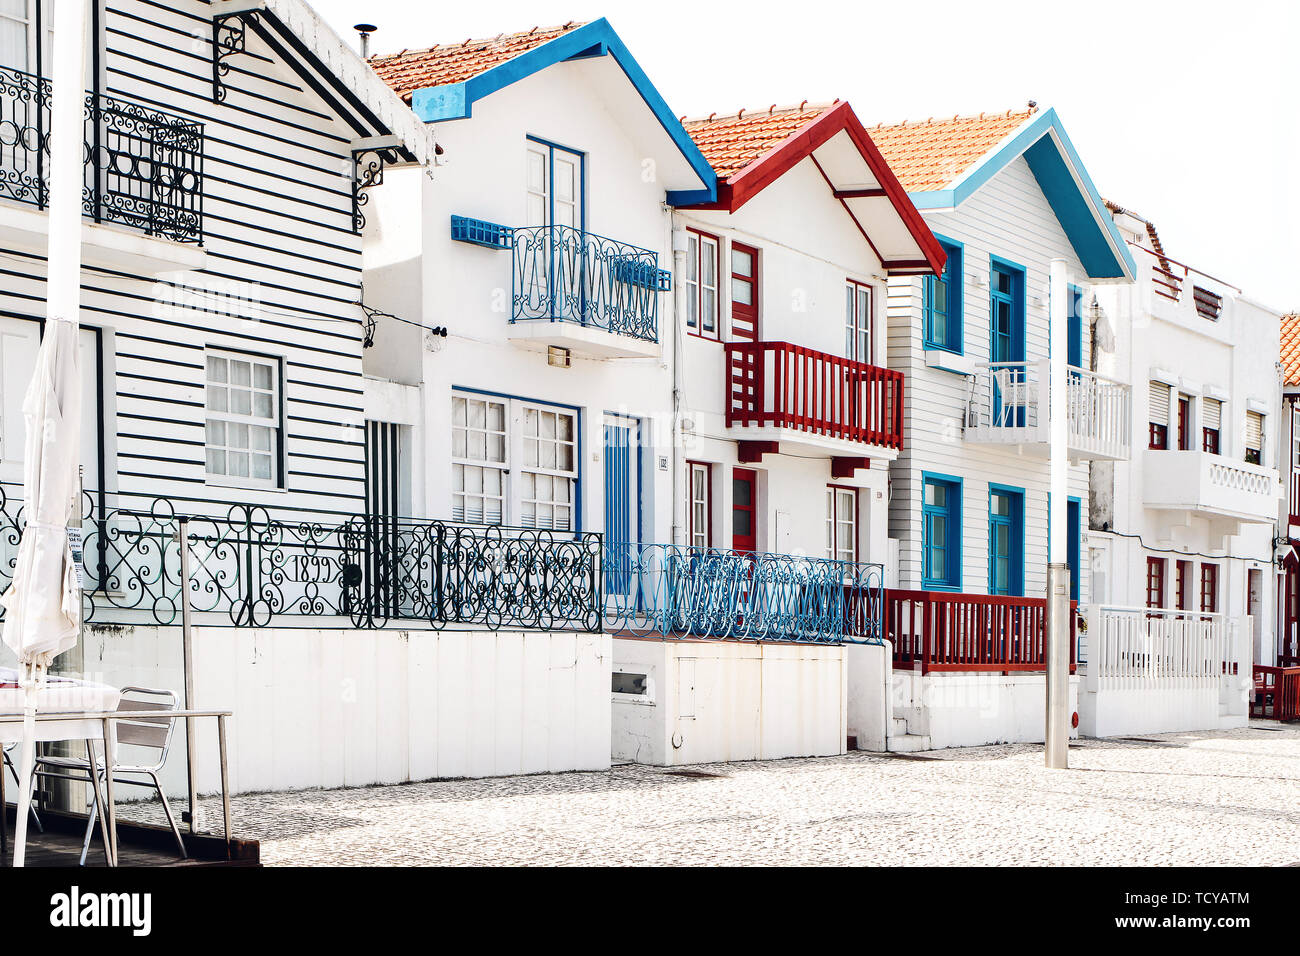 Rue avec maisons à rayures colorées au Costa Nova village, Aveiro, Portugal. Célèbre station balnéaire sur la côte atlantique dans la région de Beira Litoral. Popular tourist Banque D'Images